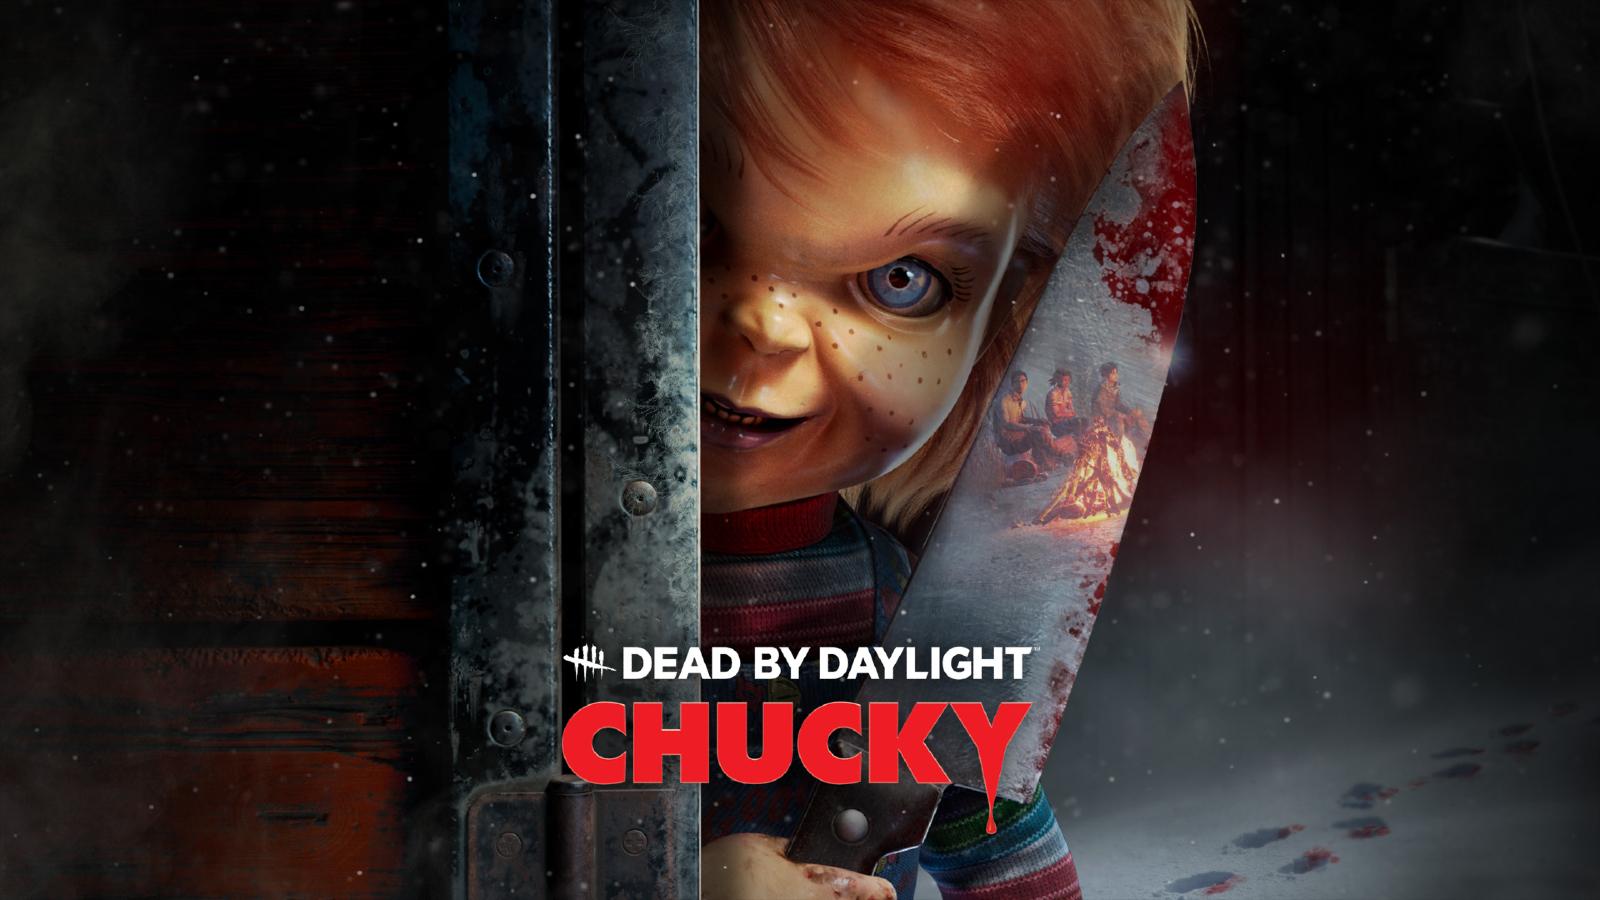 Chucky in dead by Daylight